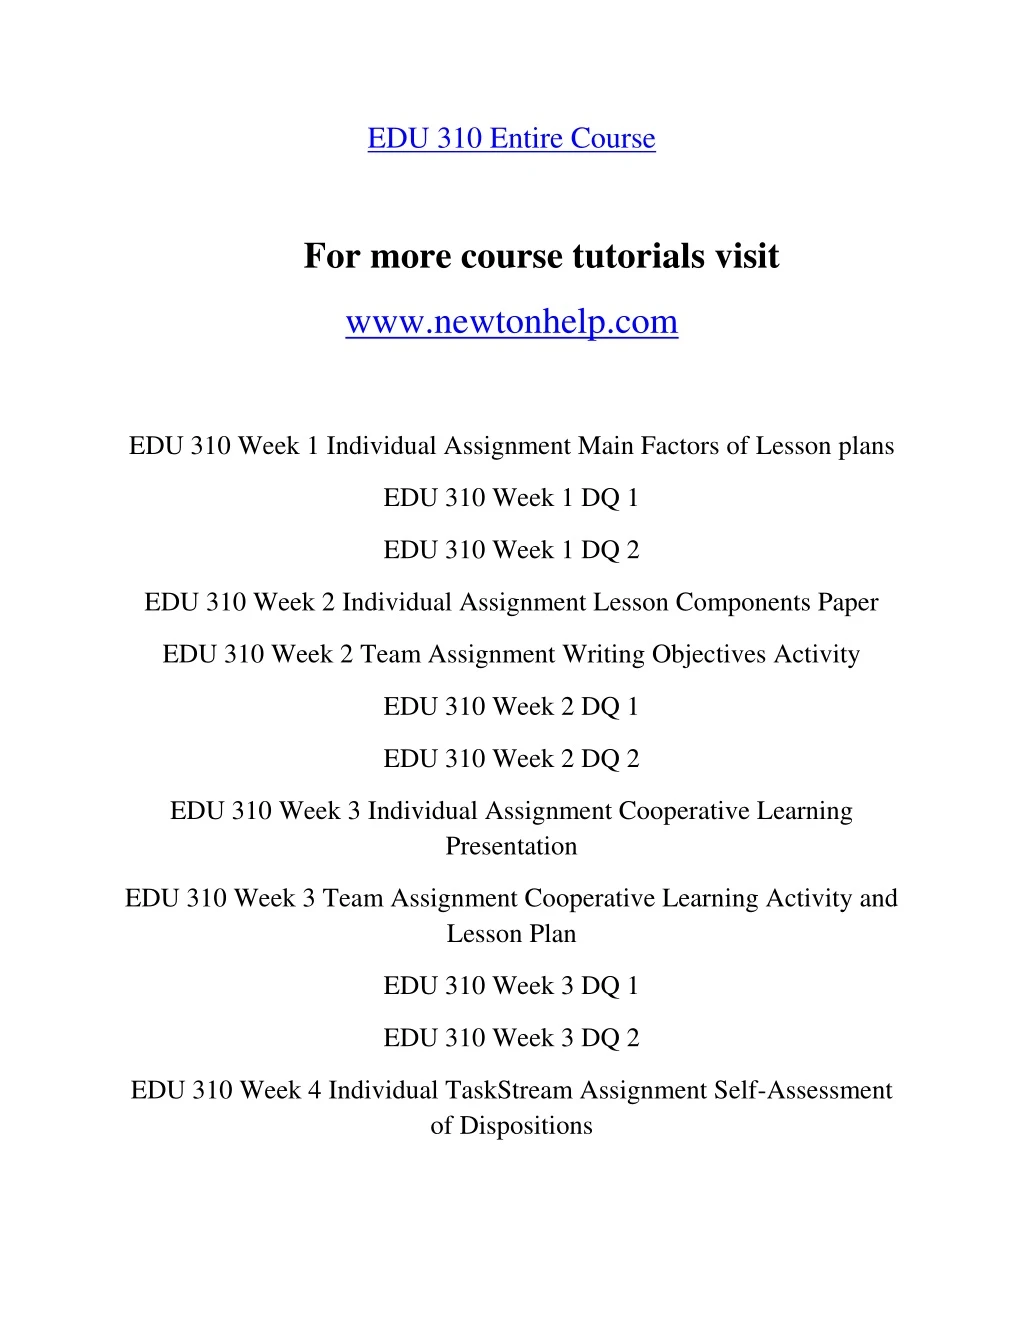 edu 310 entire course